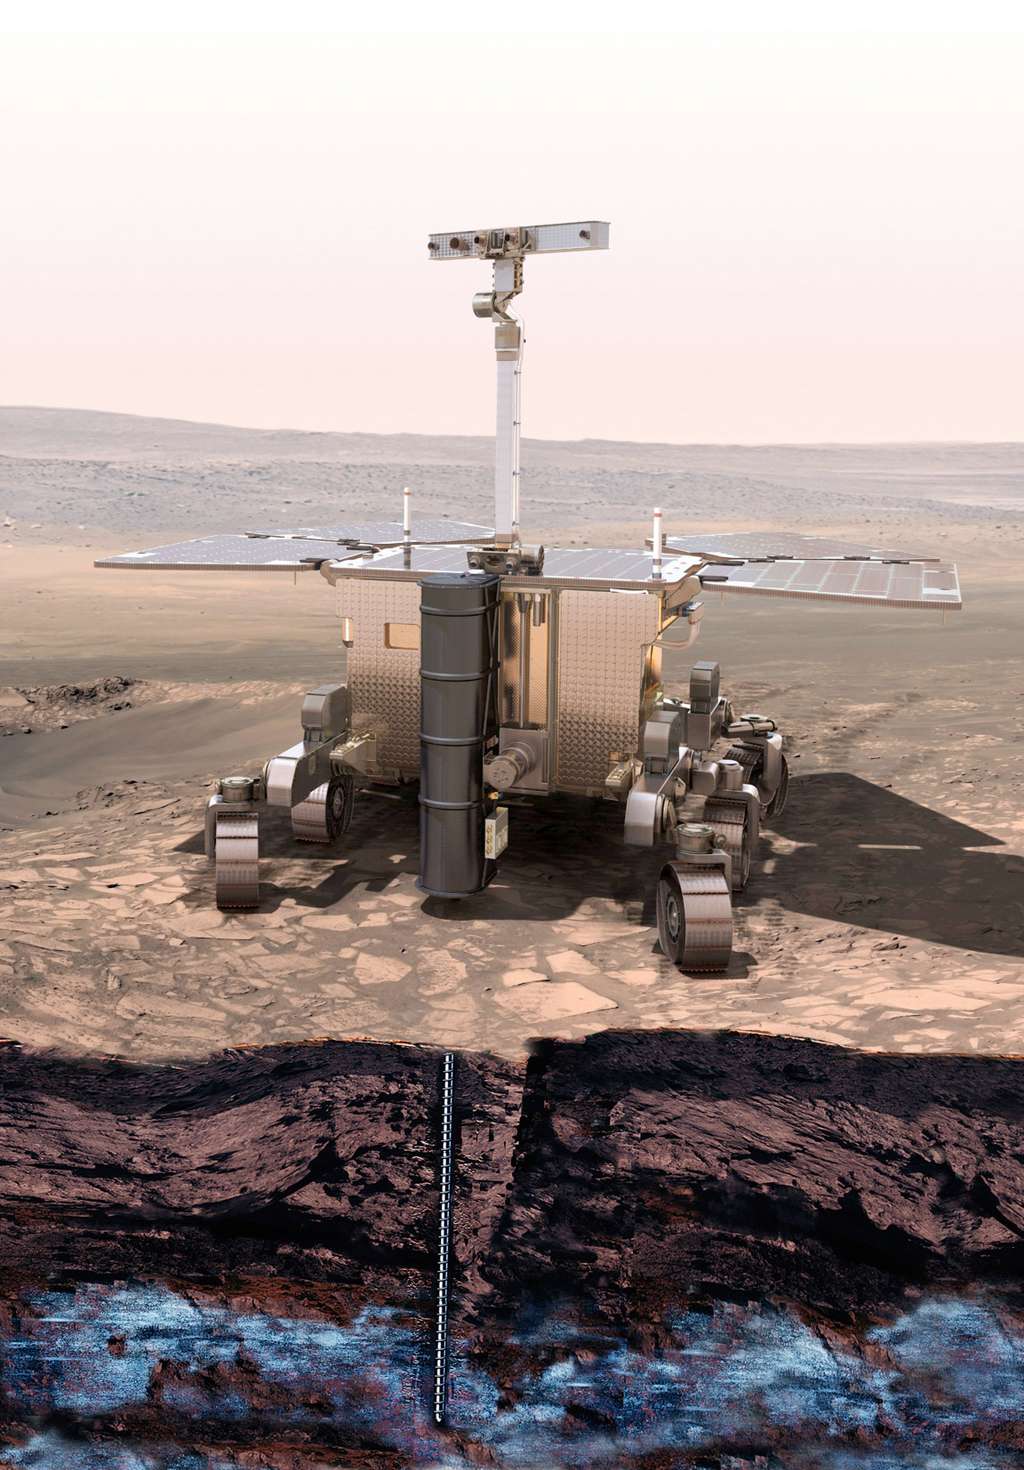 Réalisé sous la maîtrise d'œuvre de Thales Alenia Space, le rover ExoMars 2018 devrait atterrir sur Mars en fin d'année 2018. © Esa, mars 2013